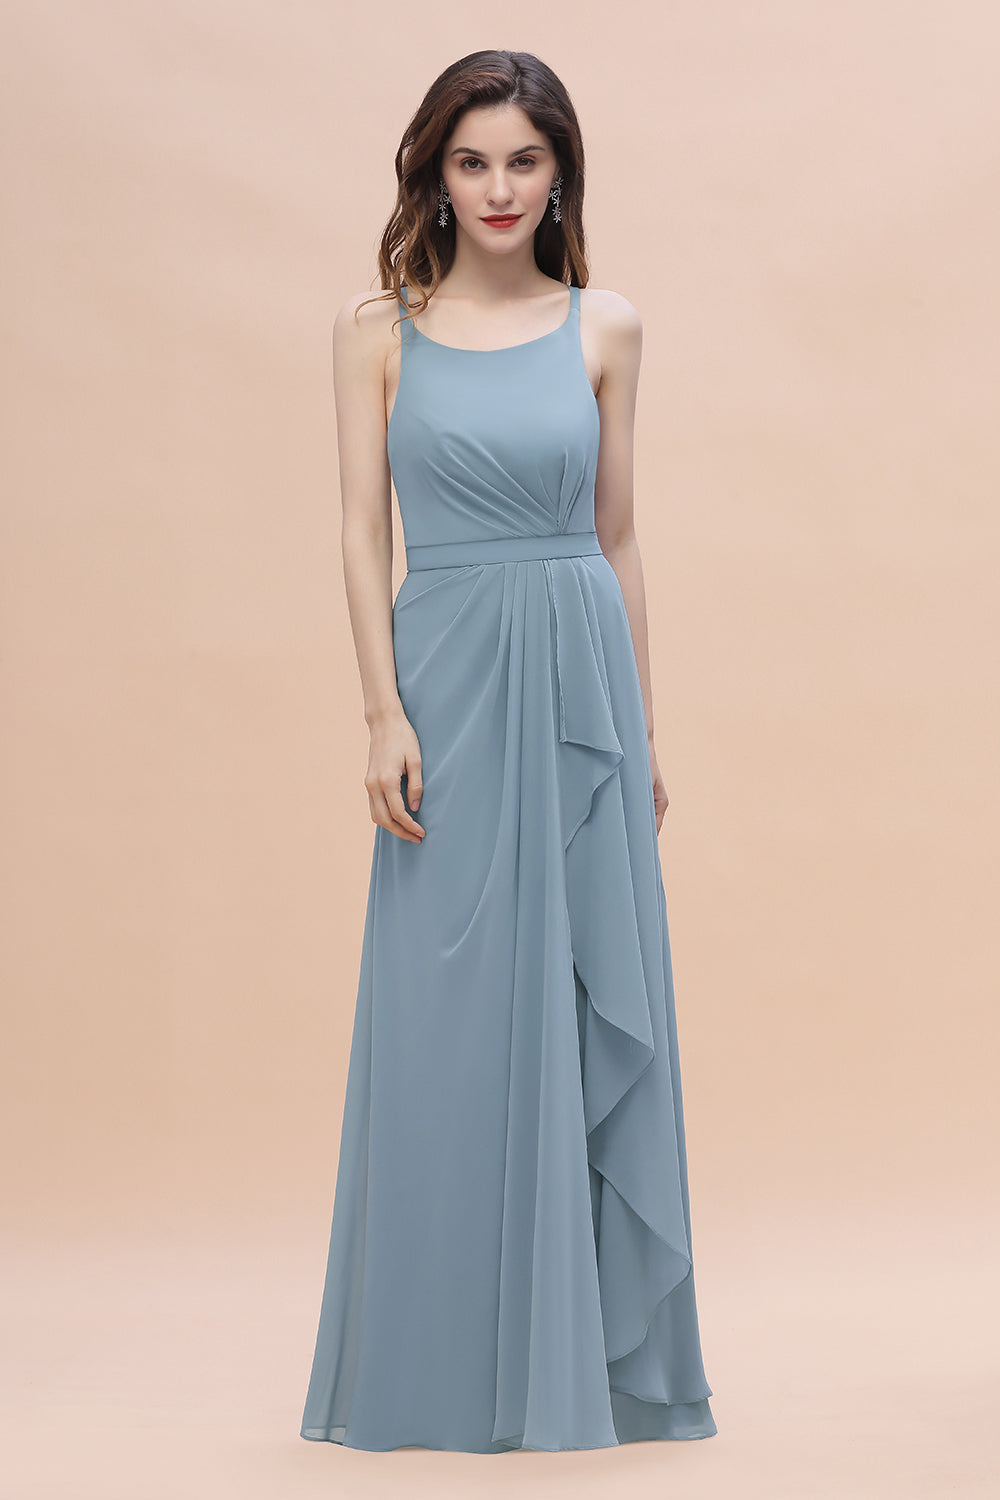 Bestellen Sie Stahlblaue Brautjungfernkleider Günstig online bei babyonlinedress.de. Brautjungfernkleid Lang Chiffon für Sie zur hochzeit gehen.